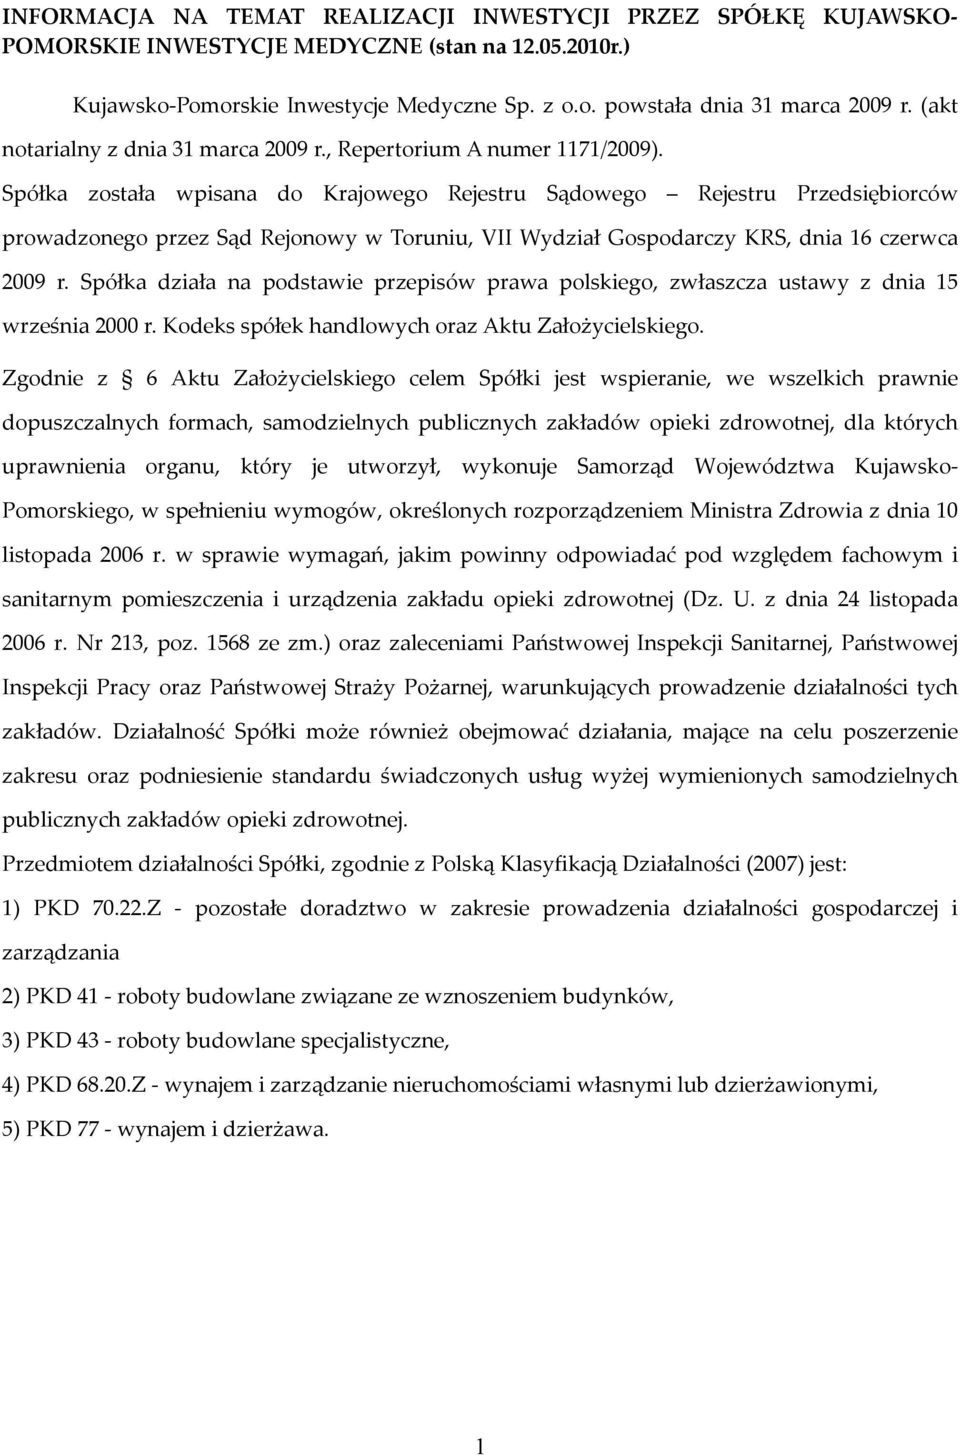 Spółka została wpisana do Krajowego Rejestru Sądowego Rejestru Przedsiębiorców prowadzonego przez Sąd Rejonowy w Toruniu, VII Wydział Gospodarczy KRS, dnia 16 czerwca 2009 r.